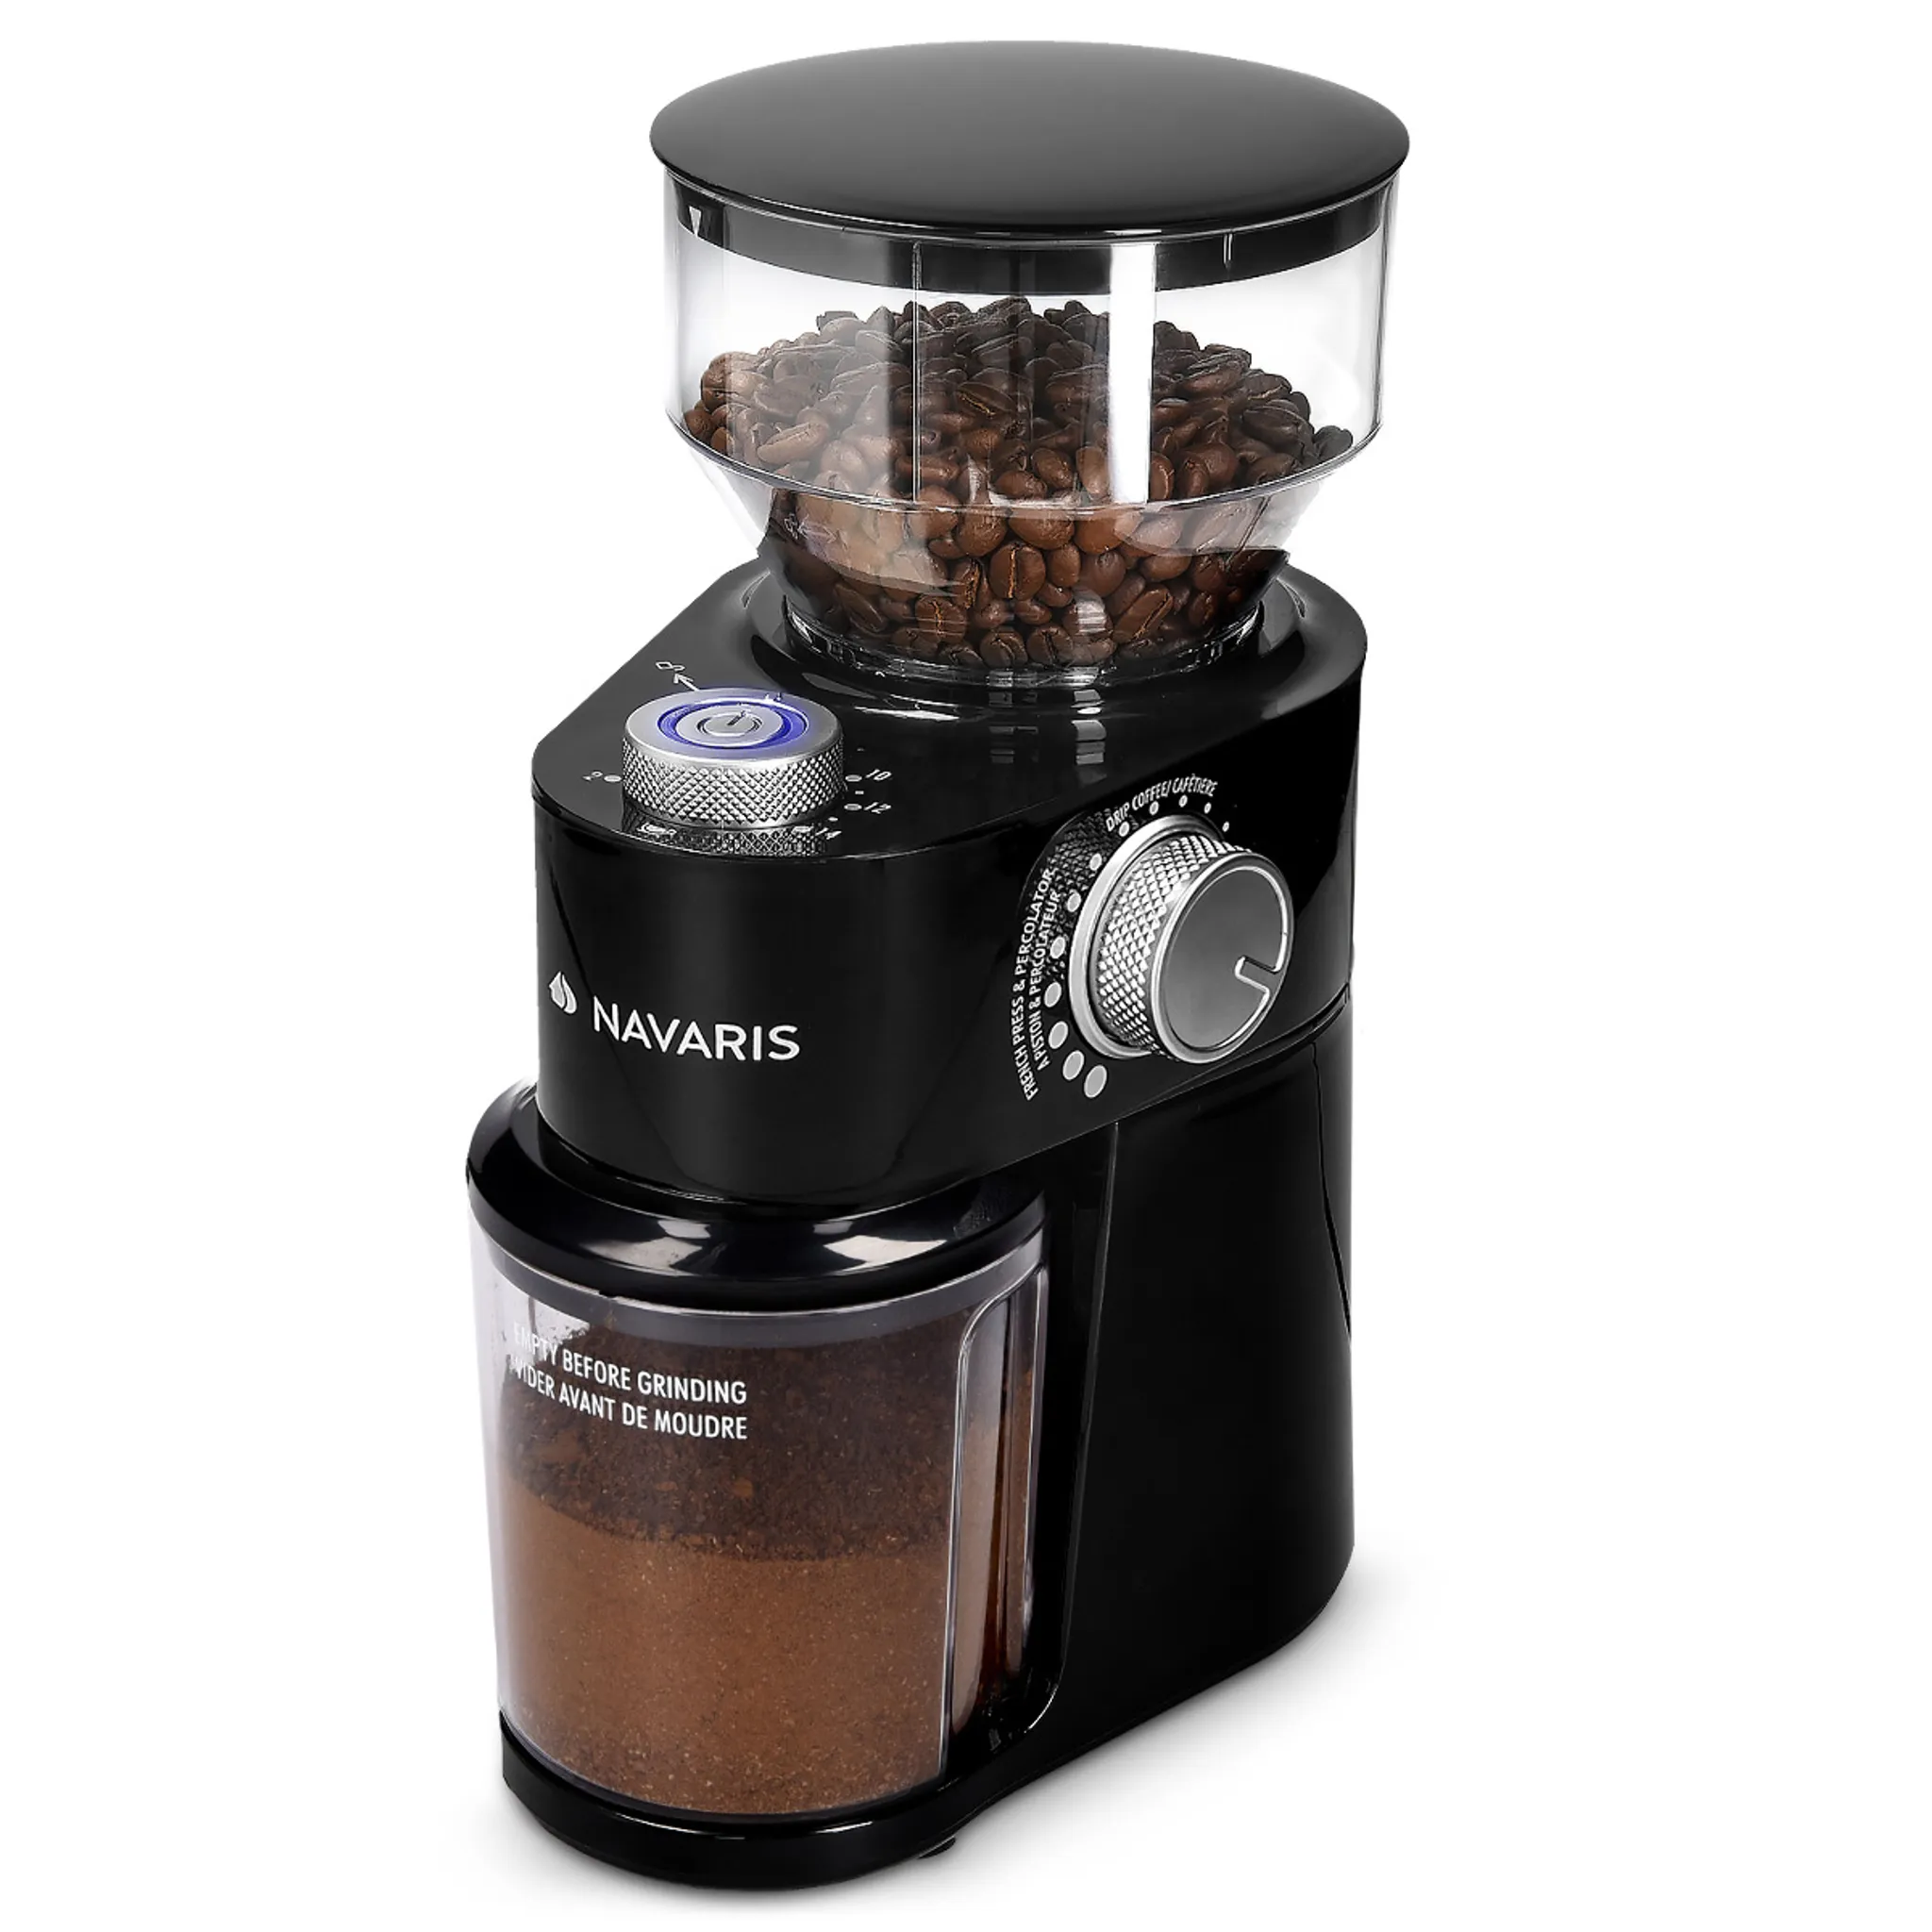 kaufland.de | Navaris Elektrische Kaffeemühle mit Edelstahl Scheibenmahlwerk - 200W - für bis zu 14 Tassen Kaffee - 18 Mahlgrade - Kaffee Mühle Schwarz